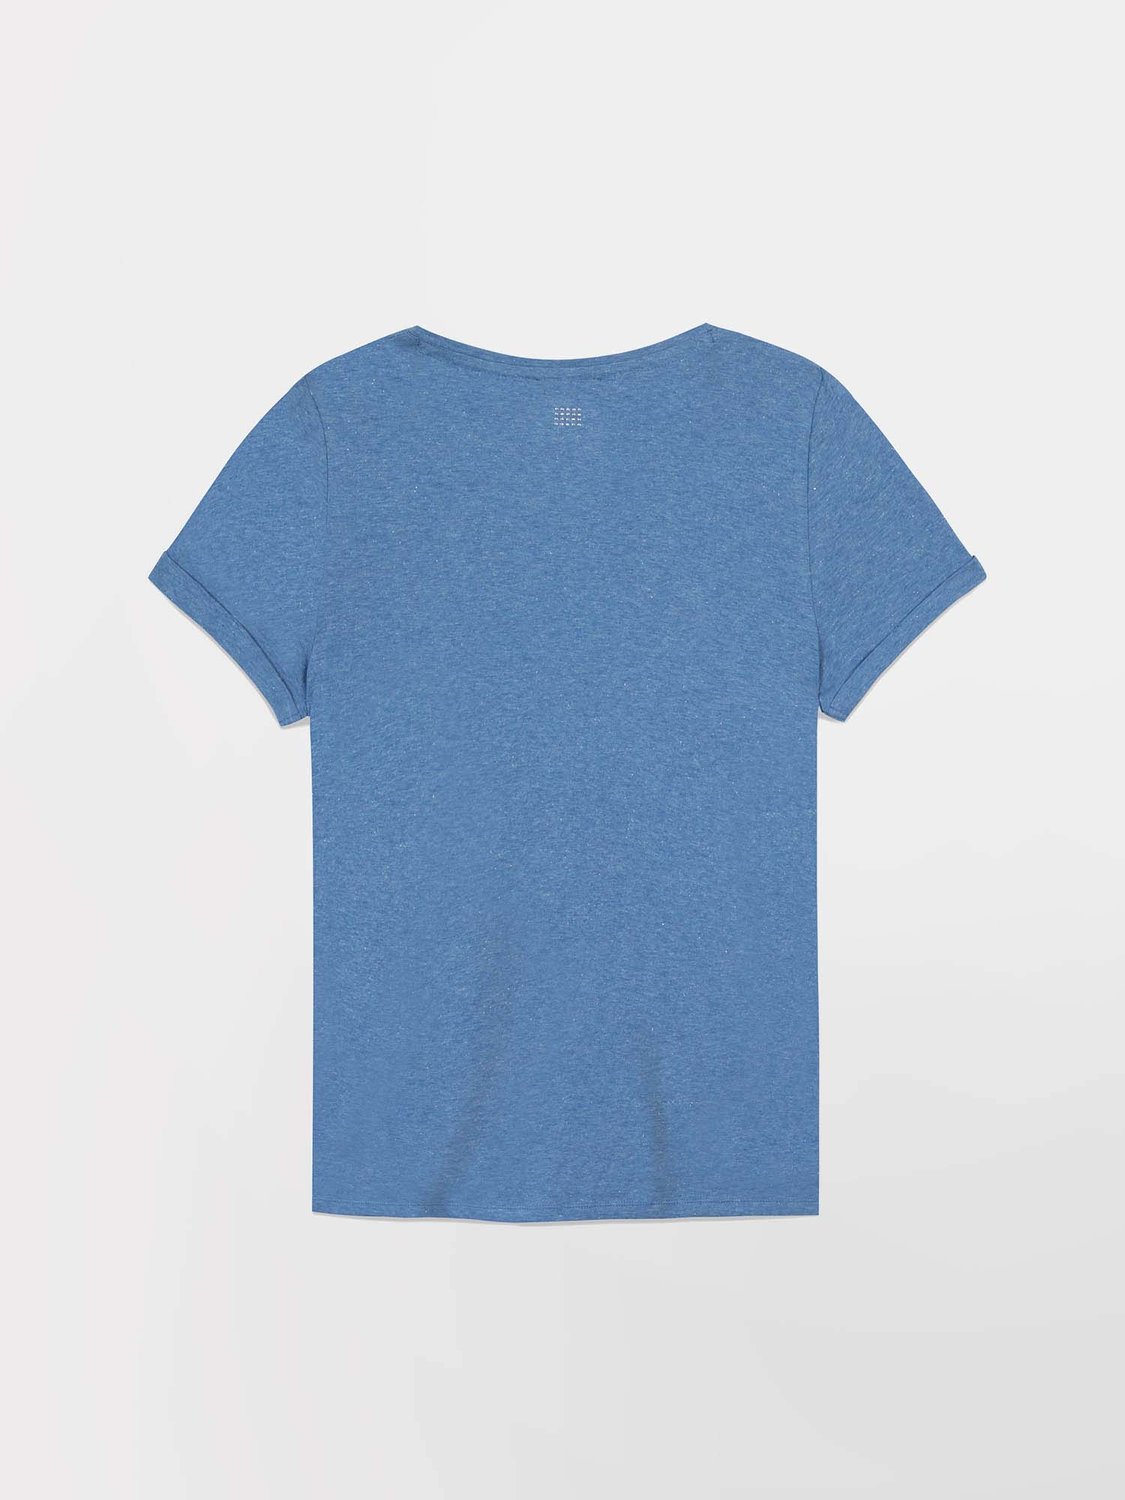 Tee-Shirt Femme Col V Jersey Coton Bleu